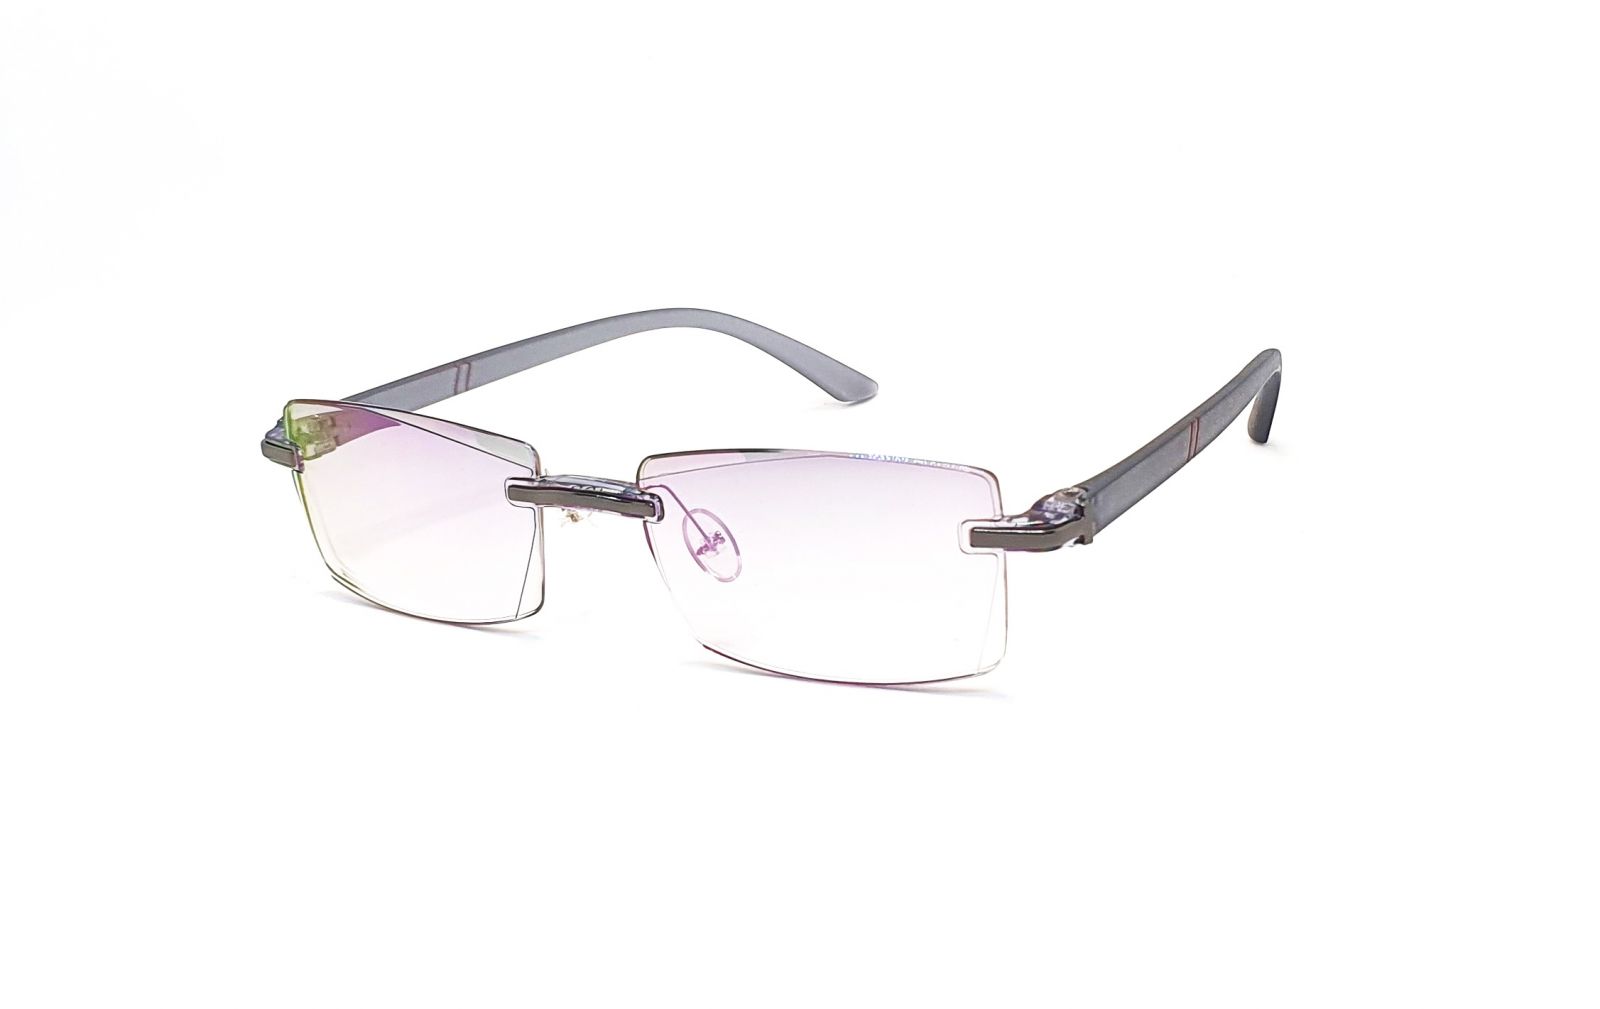 Bezrámečkové dioptrické brýle 346 / -2,50 s antireflexní vrstvou